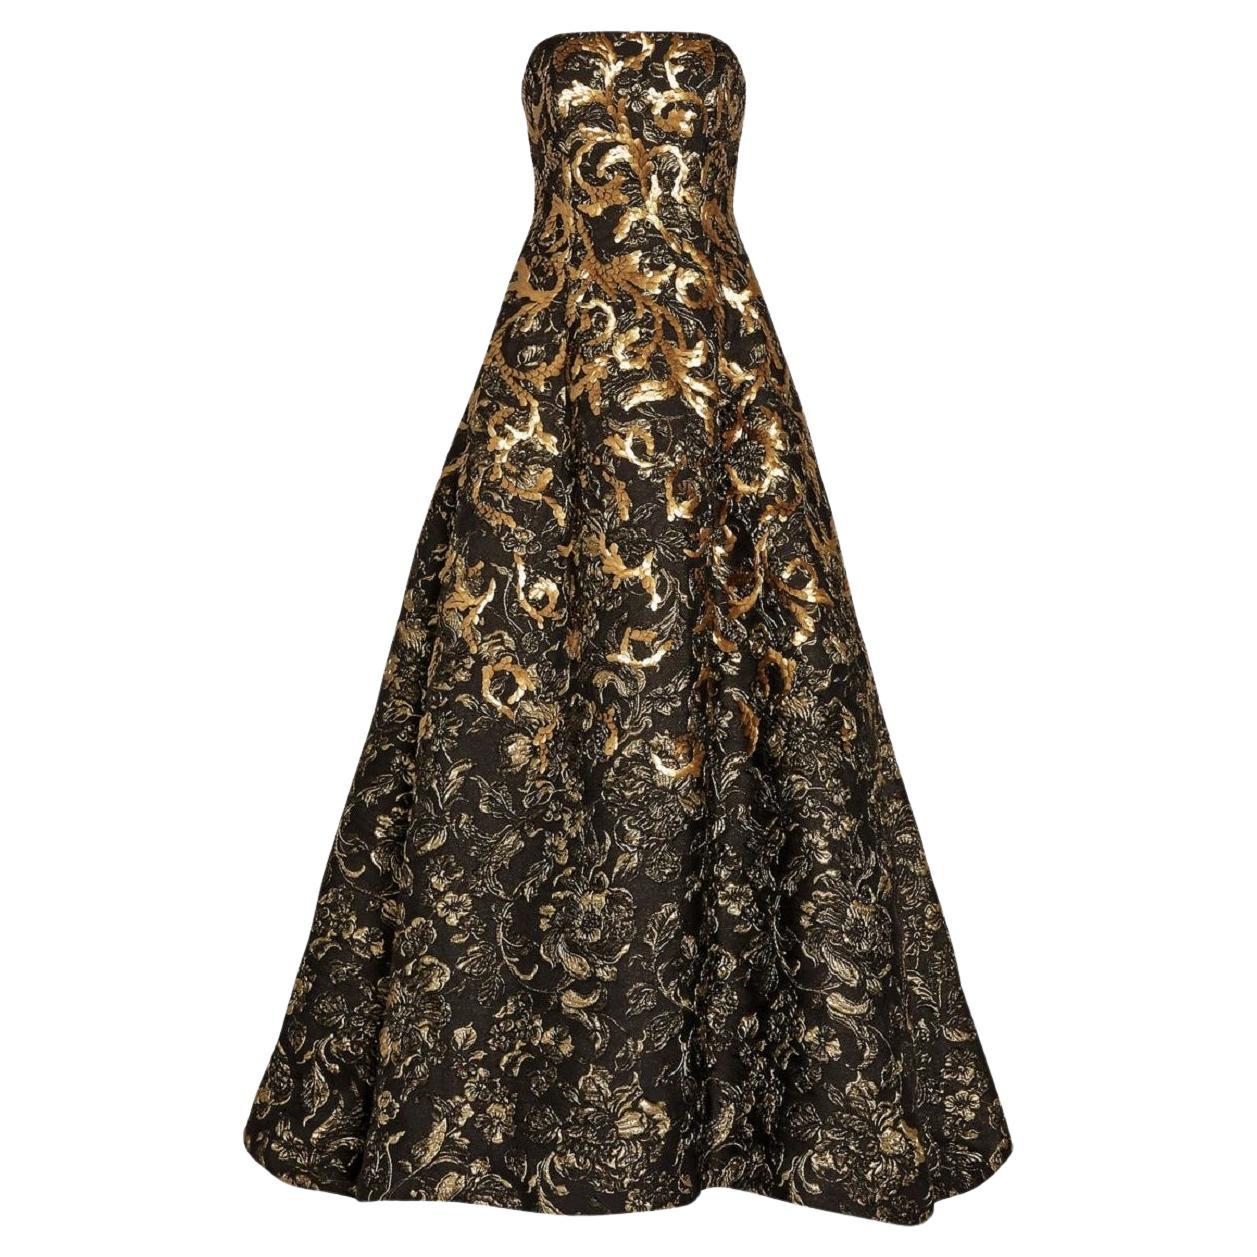 Oscar de la Renta FW 2014 Runway Museum Red Carpet Black Gold Gown Dress L / XL For Sale